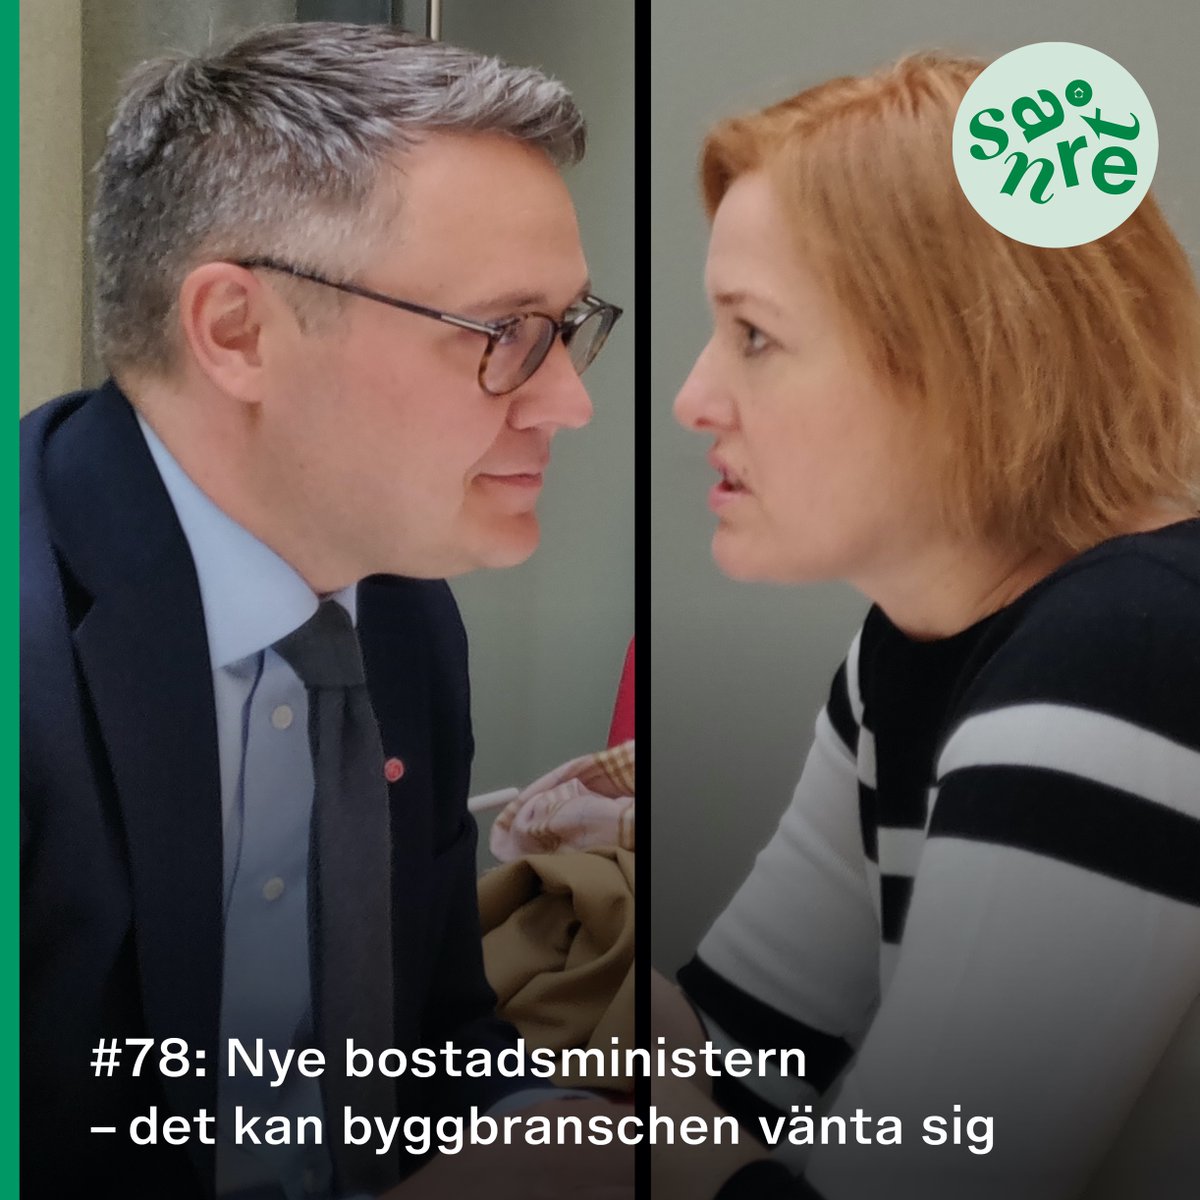 Nytt avsnitt av #Snåret!

I det senaste avsnittet av #Snåret träffar Kajsa Hessel, vd på @SvByggtjanst bostads- och biträdande arbetsmarknadsminister @johandanielsson (s) för att prata om vad byggbranschen kan förvänta sig av honom.


Lyssna här: https://t.co/n0qE0lFd5i https://t.co/N8RSCX8aze